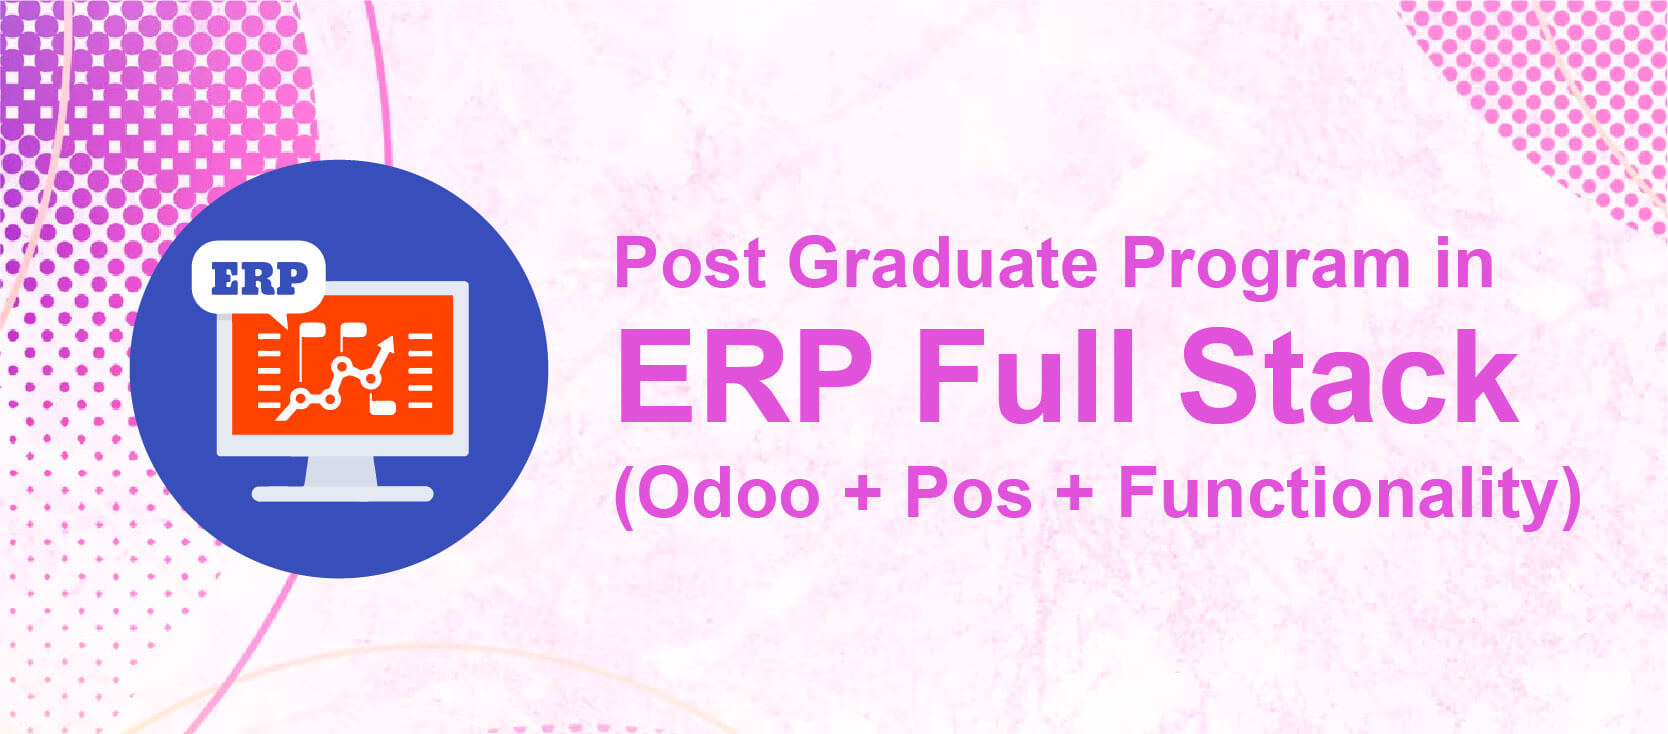 PG Program in ERP